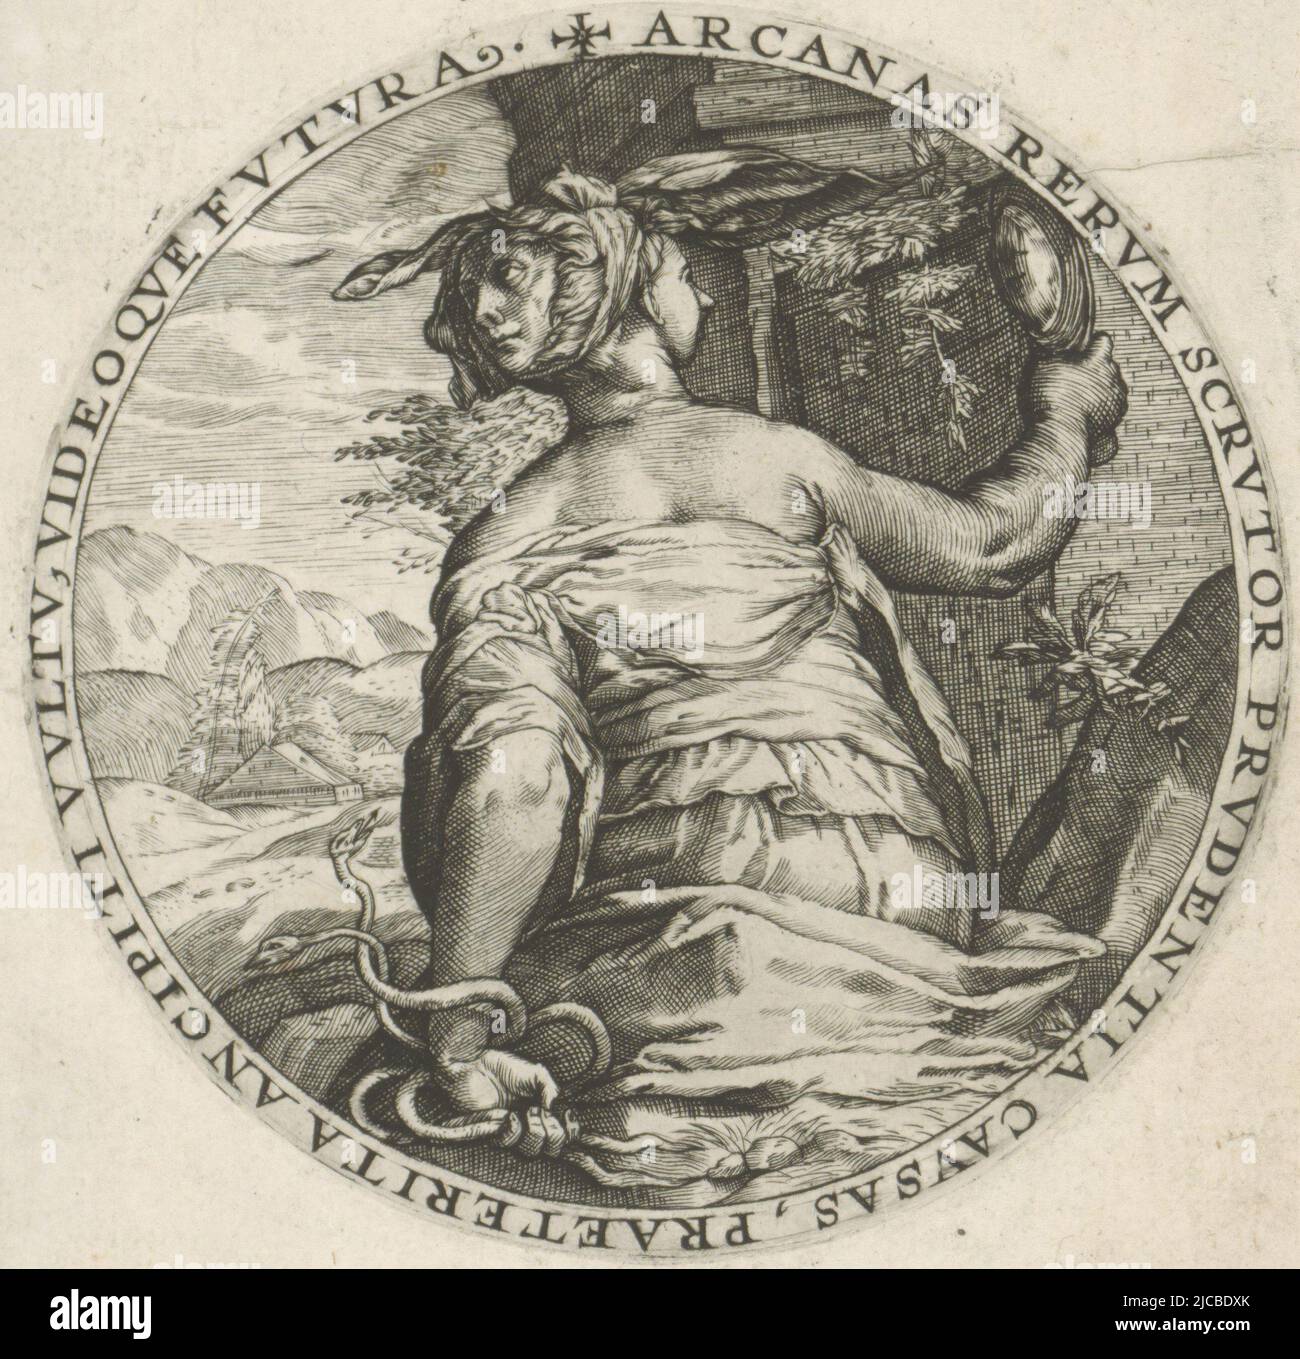 La personnification féminine de prudence Prudentia, l'une des quatre vertus  cardinales, avec une tête de Janus entre ses mains, elle porte ses  attributs personnels: Le miroir et le serpent Imprimer d'une série